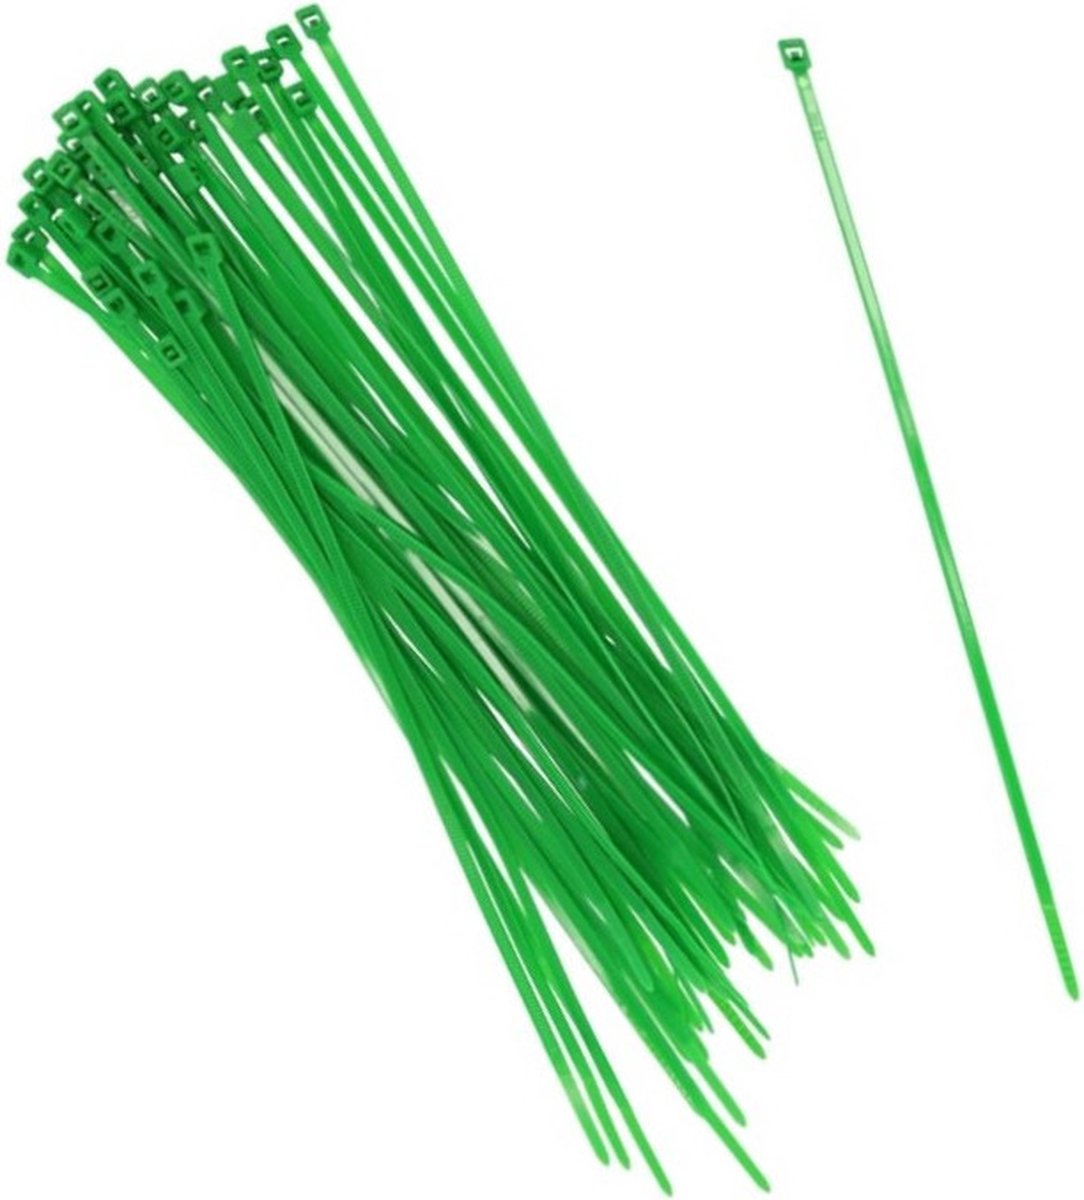 100x stuks Kabelbinders tie-wraps in het groen van 15 cm gemaakt van kunststof - snoeren bindmateriaal